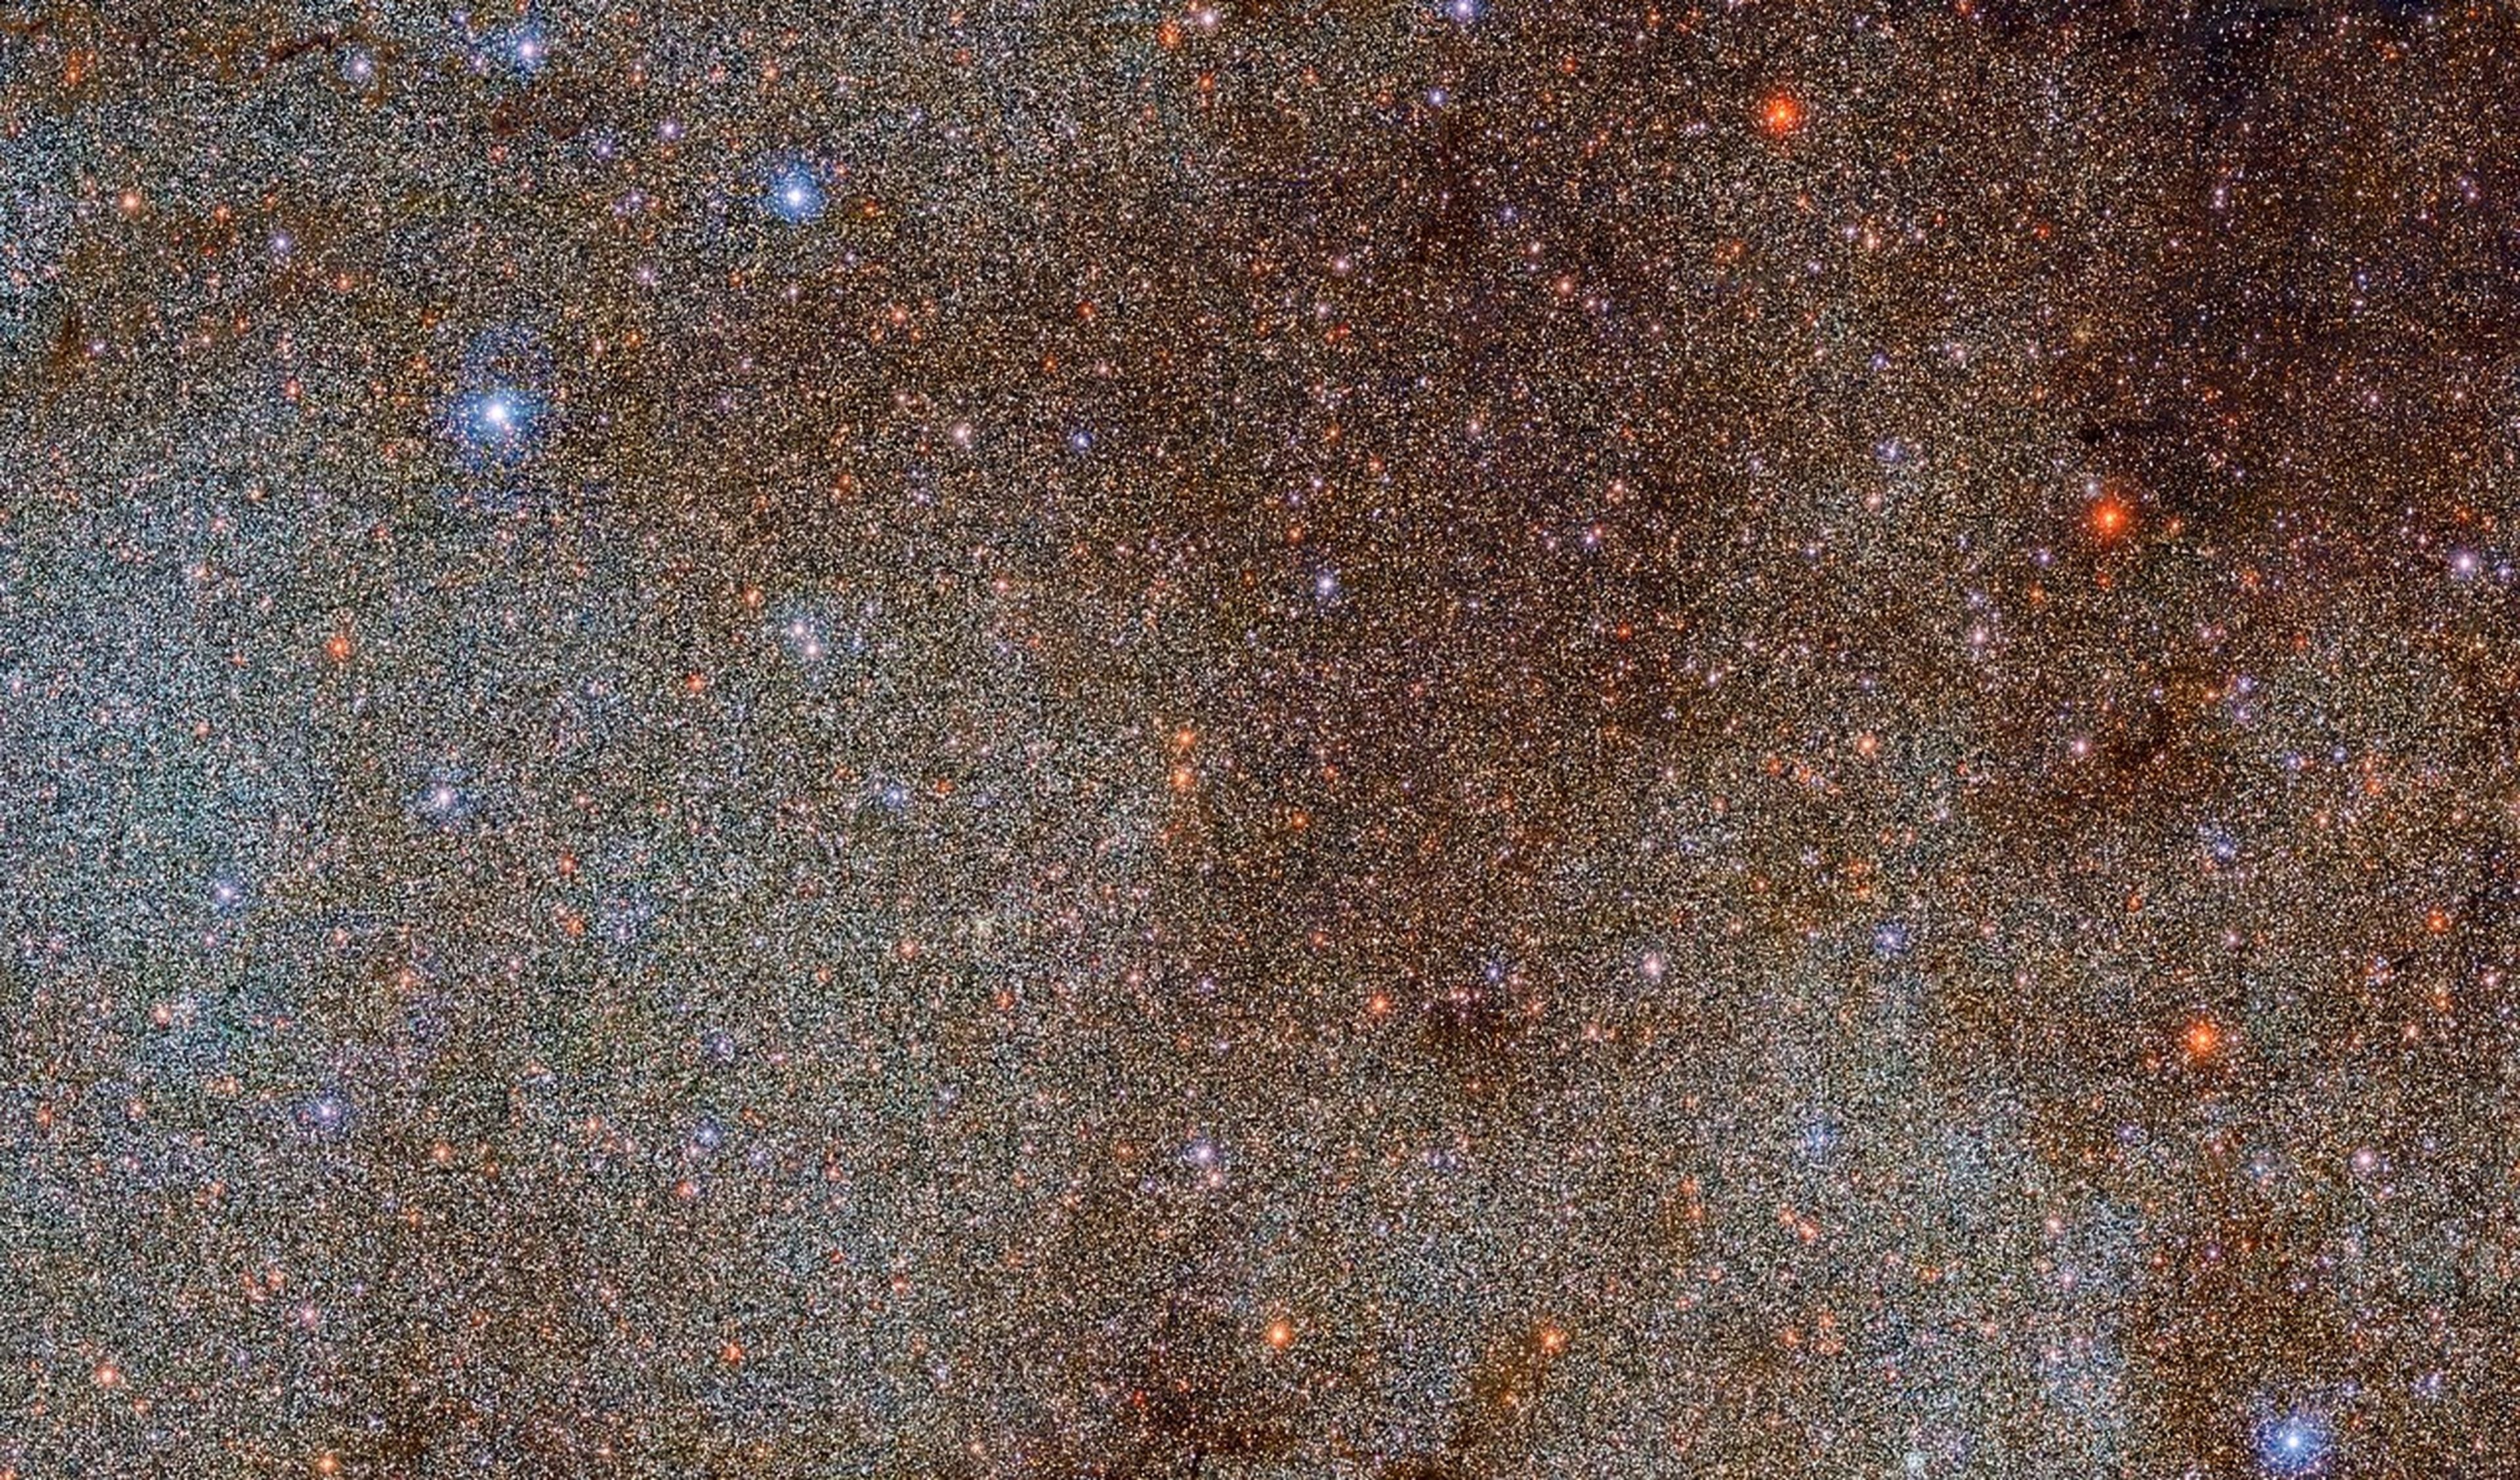 5 aÃ±os de trabajo: la foto mÃ¡s detallada de la VÃ­a LÃ¡ctea muestra 3.320 millones de objetos celestiales